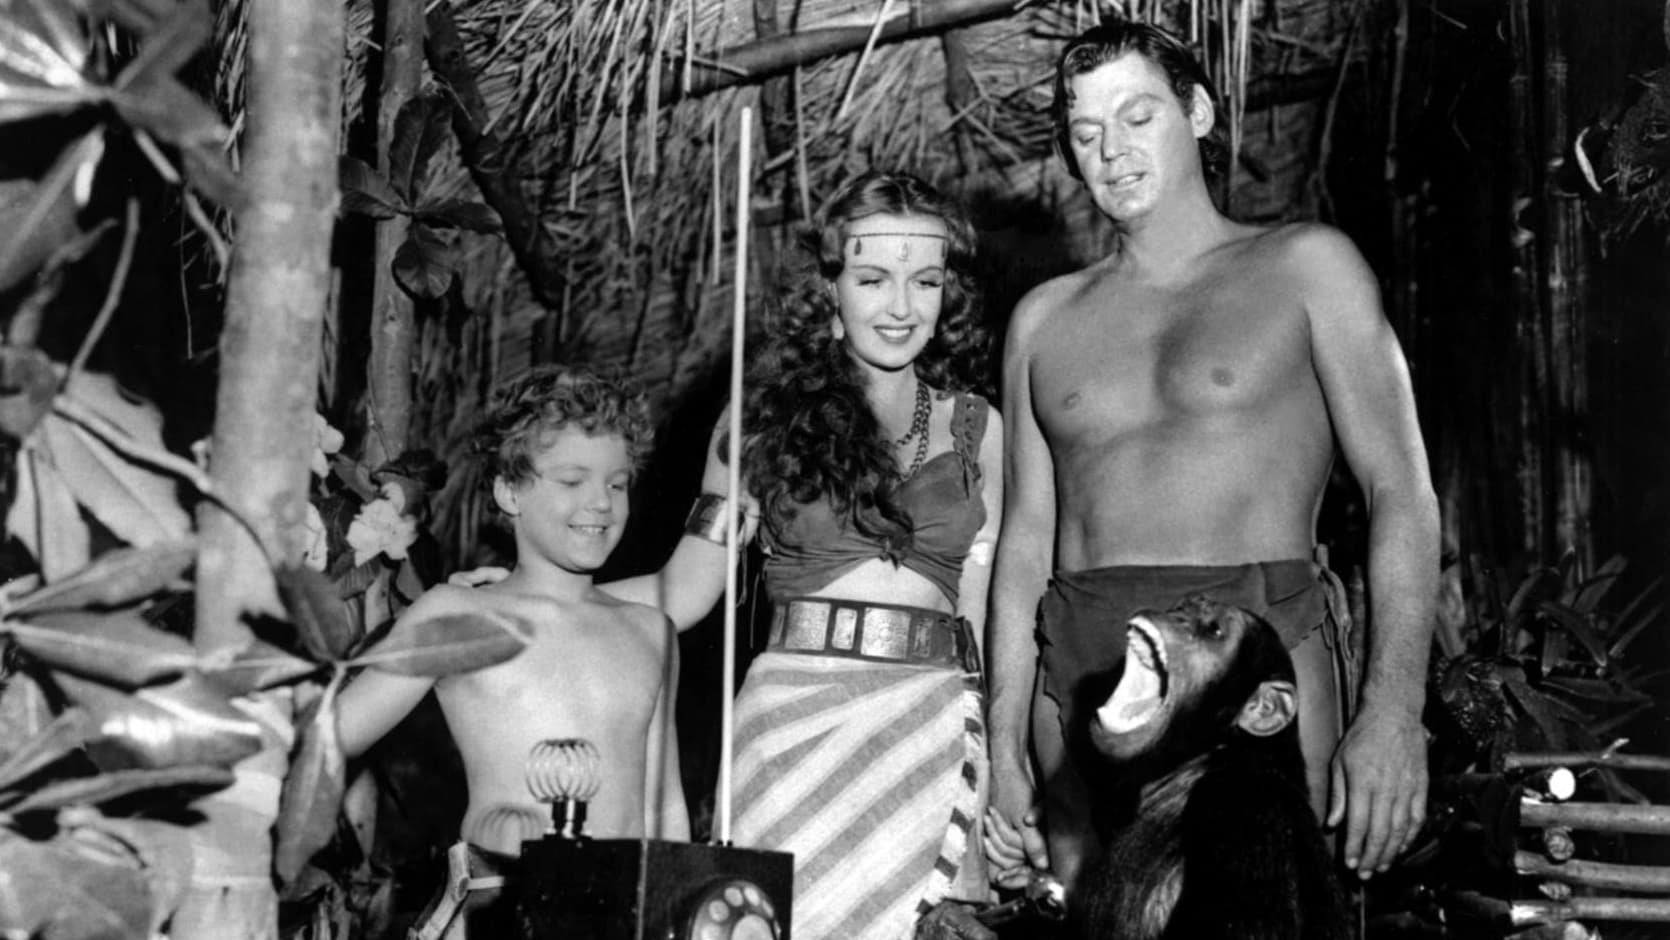 Tarzan Triumphs (1943)